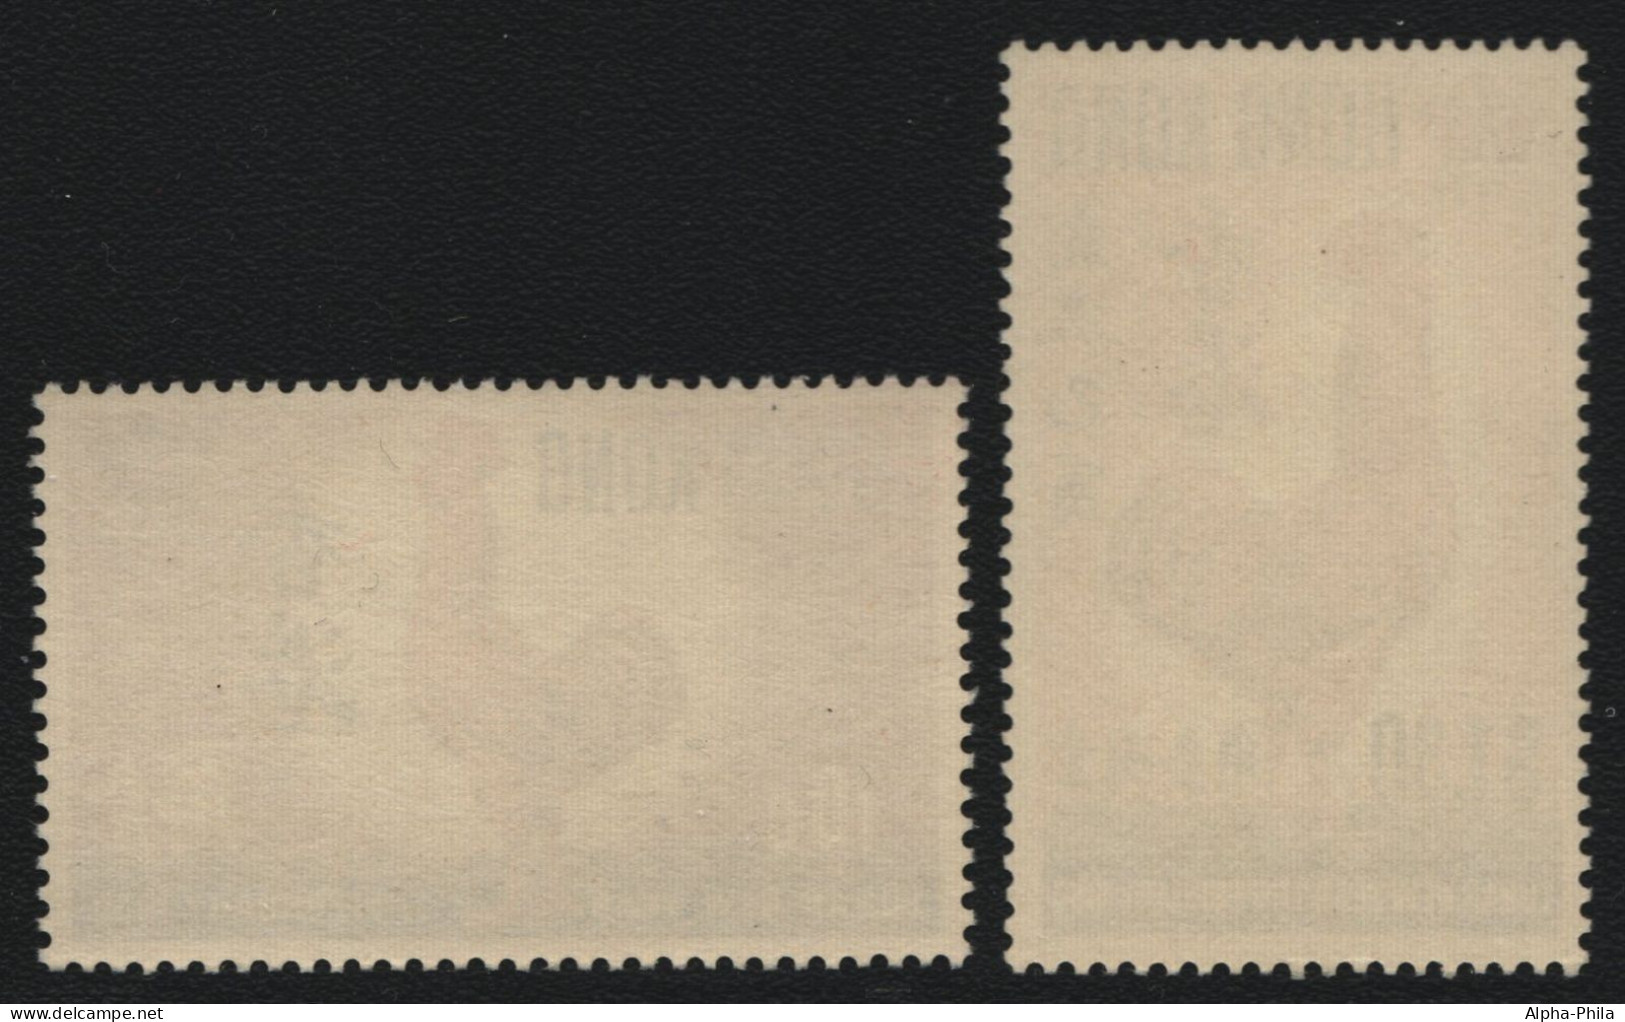 Hongkong 1969 - Mi-Nr. 242-243 ** - MNH - Jahr Des Hahnes (V) - Unused Stamps